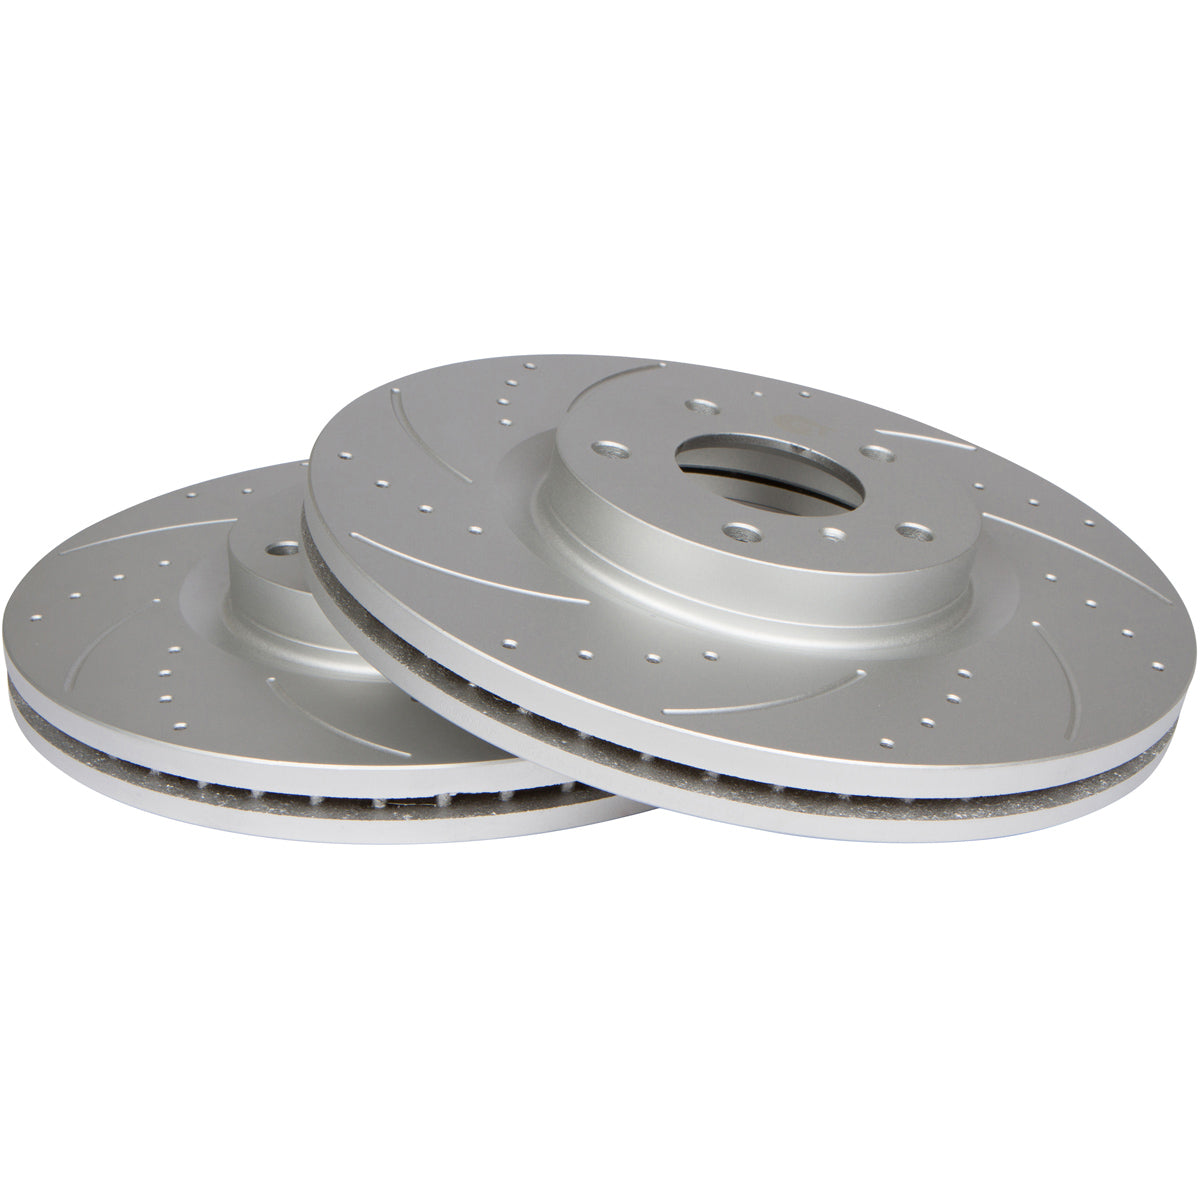 Chevrolet Equinox 2010 – 2017 Disc Rotors & Ceramic Brake Pads